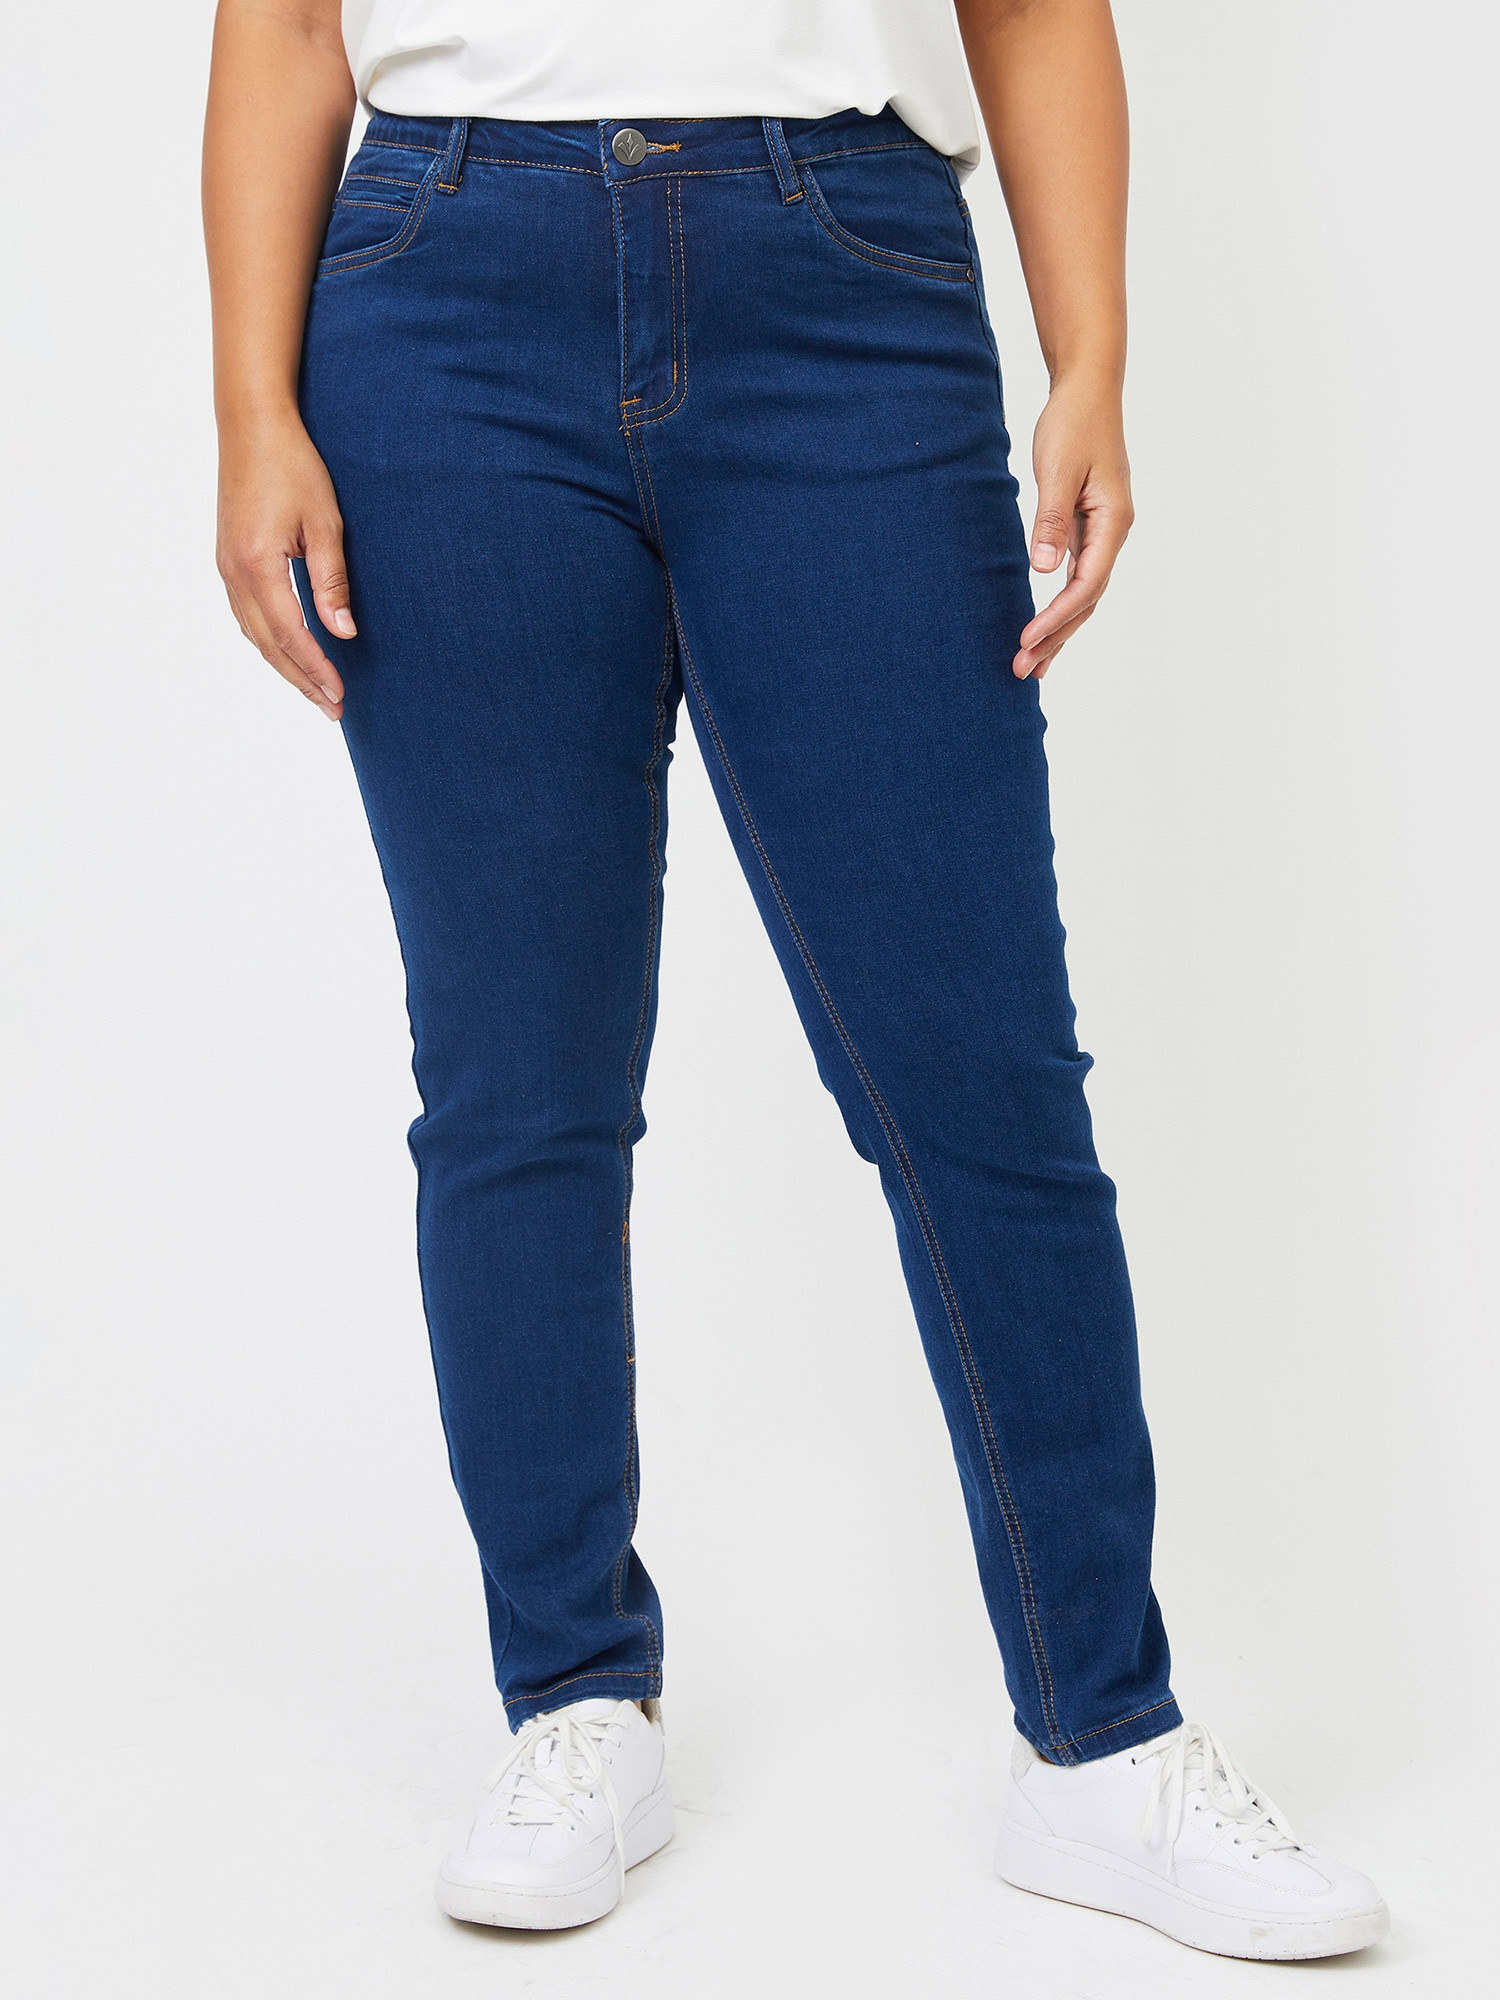 MONACO - Mørkeblå jeans med høyt liv